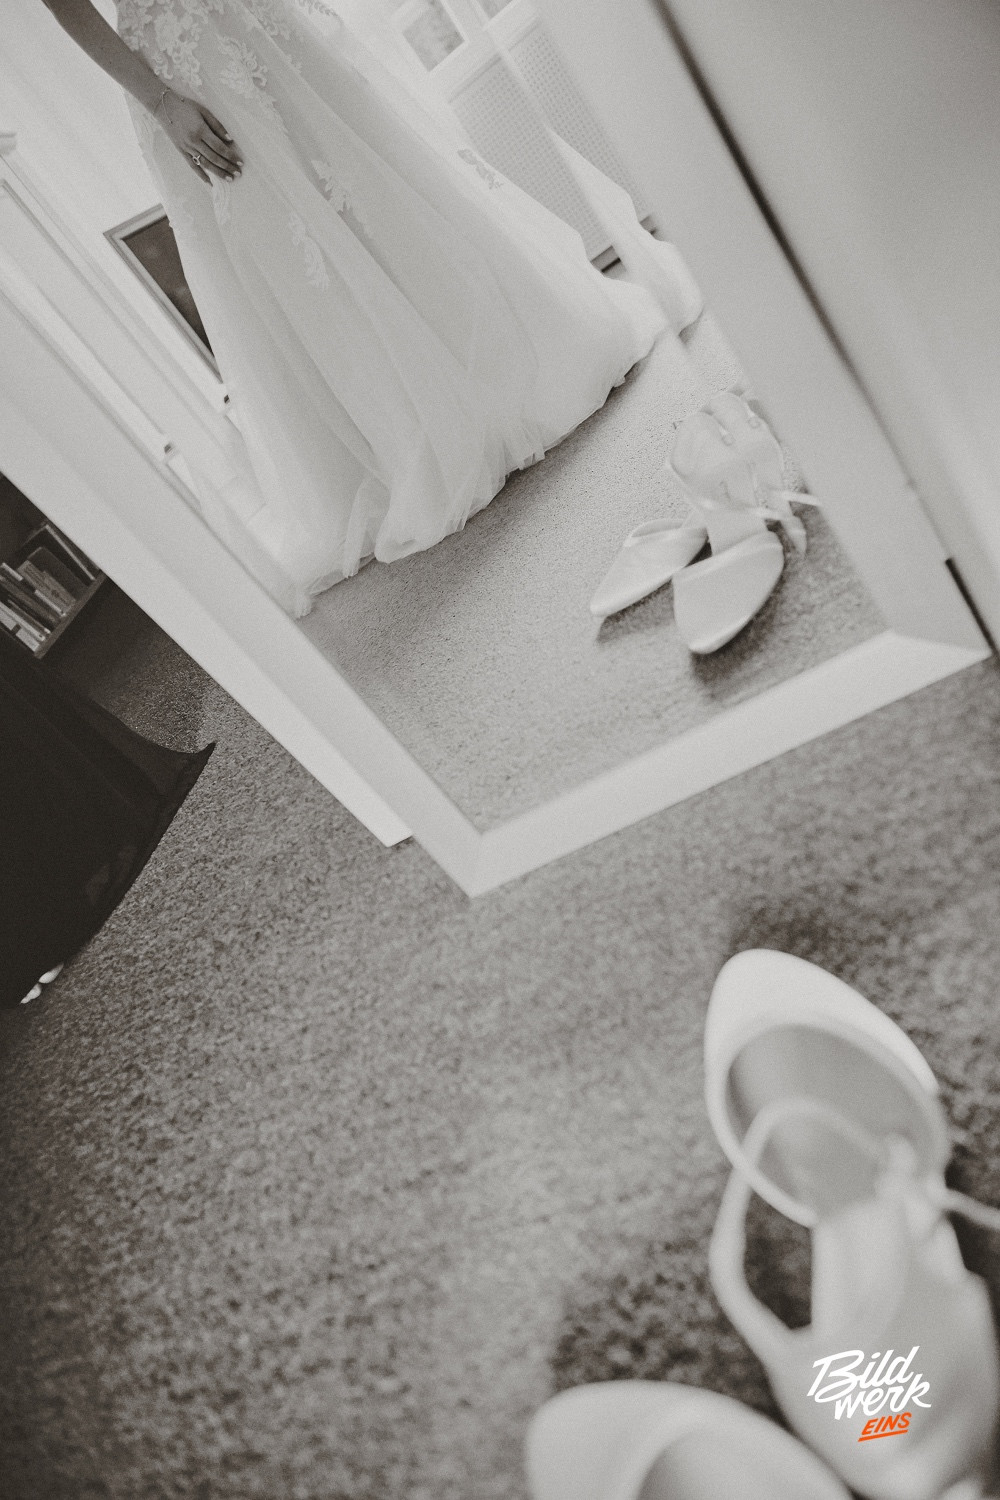 Foto: Copyright - Paul Walther - Die Braut beim Ankleiden bei sich zu Hause. Sie steht vor dem Spiegel und betrachtet sich. Es ist nur ein Ausschnitt, auf dem im Vordergrund die Brautschuhe stehen.